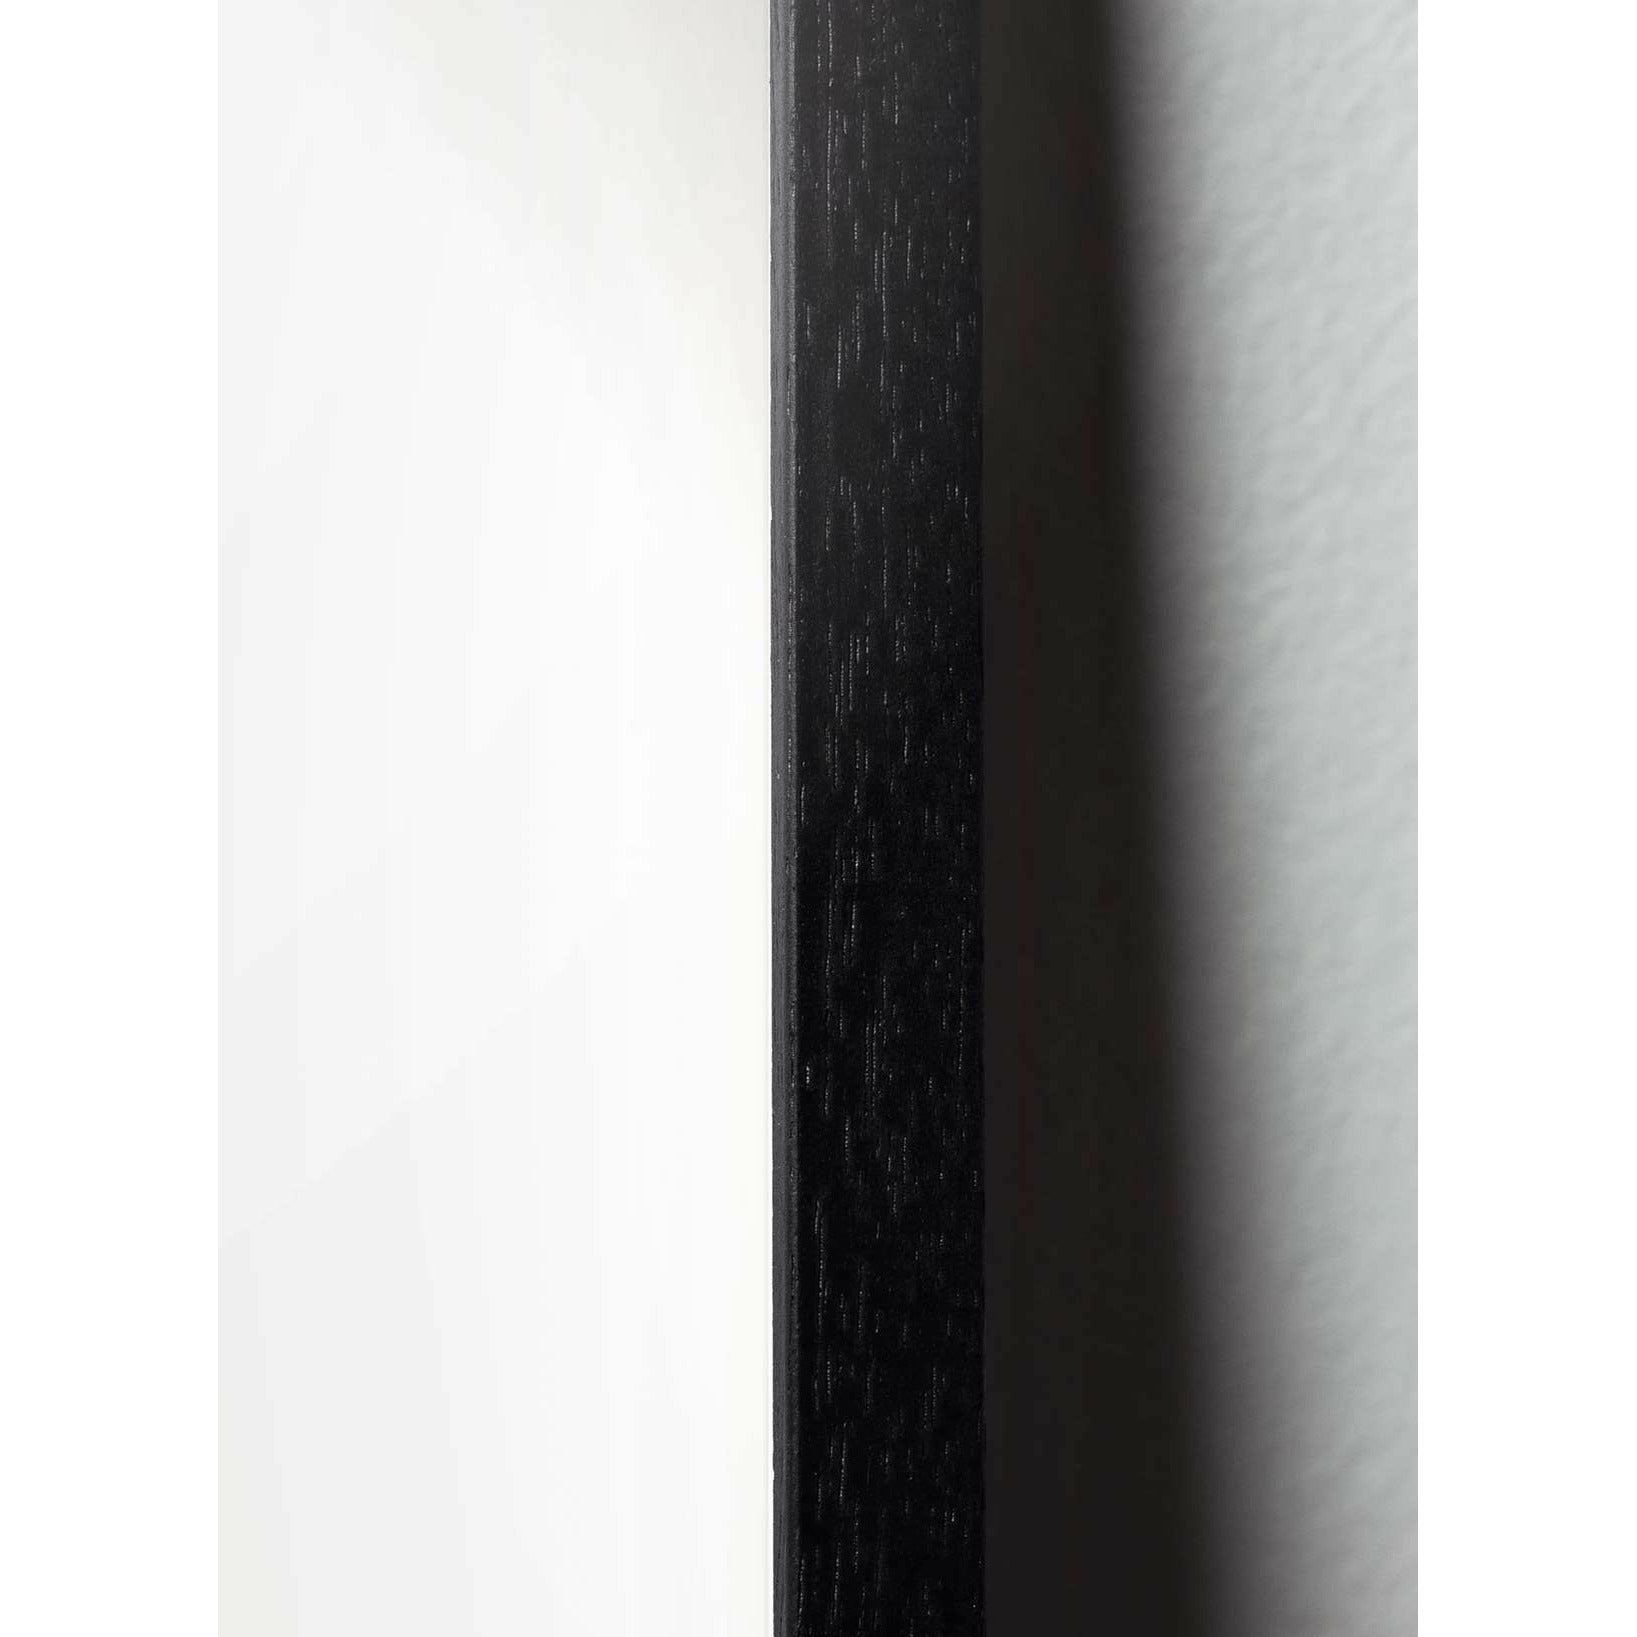 Brainchild Egg Classic Poster, Rahmen aus schwarz lackiertem Holz 30x40 cm, dunkelblauer Hintergrund